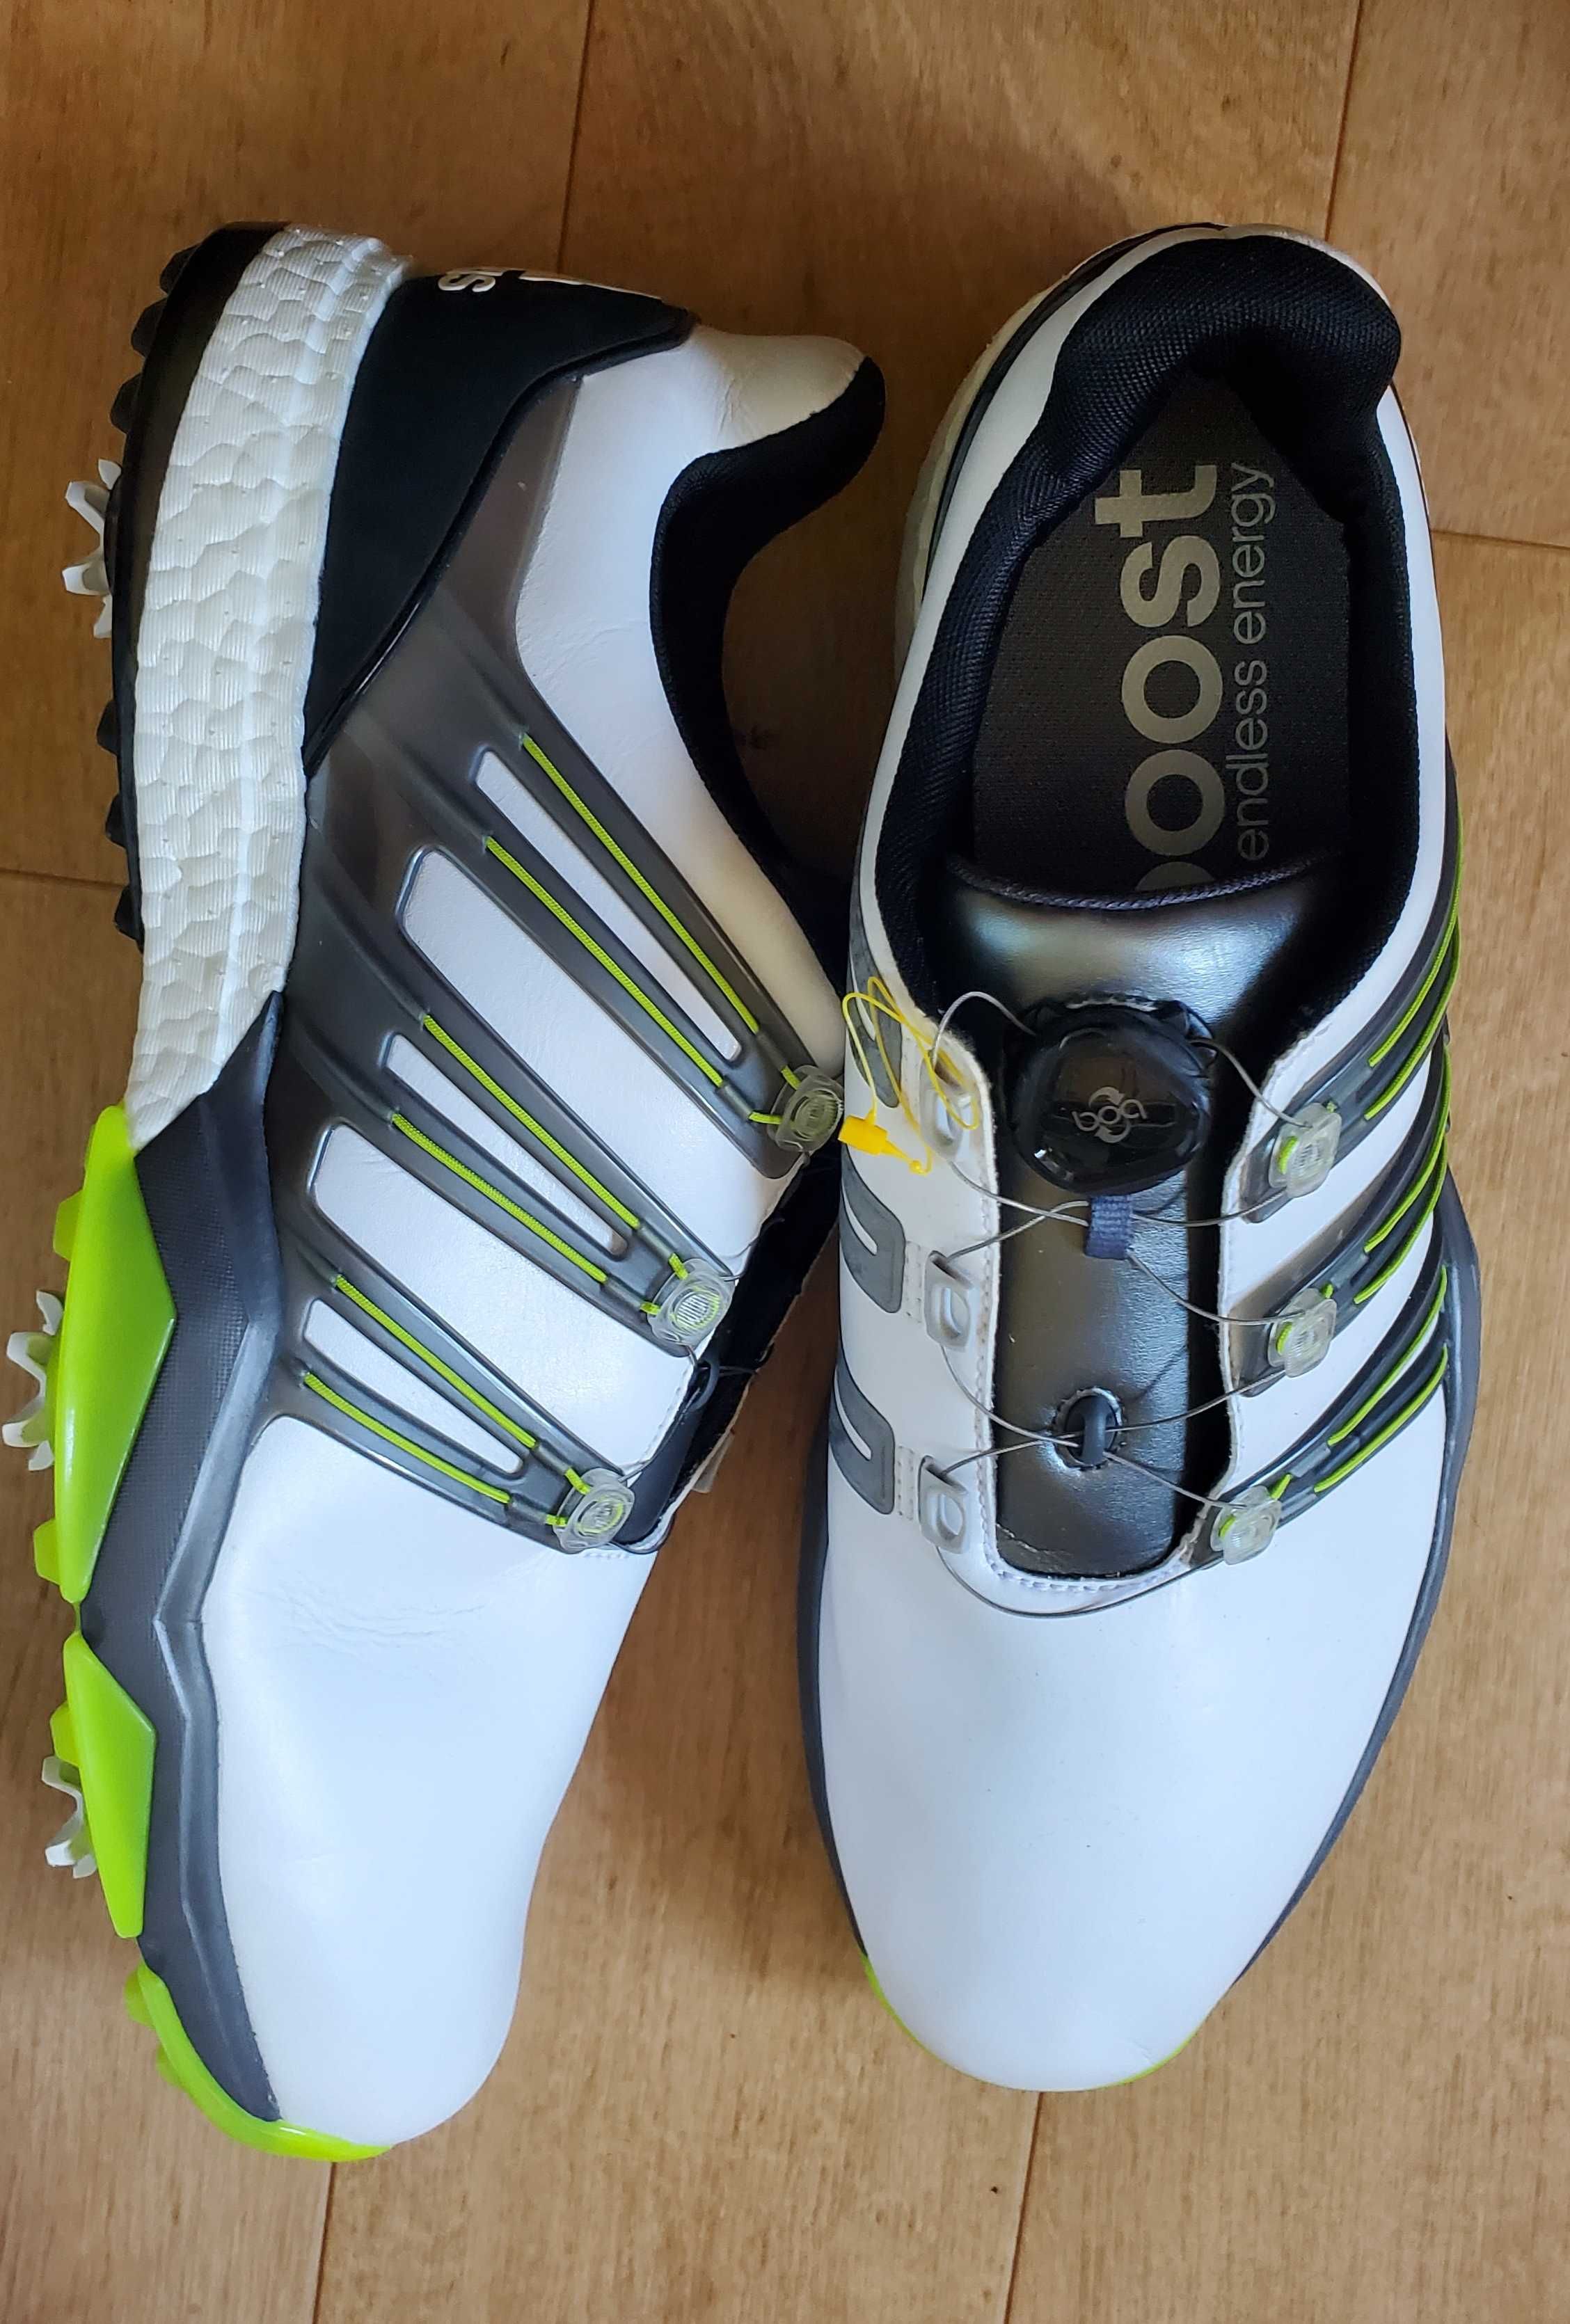 Кроссовки для гольфа Adidas Powerband Boost. Р-Р 49